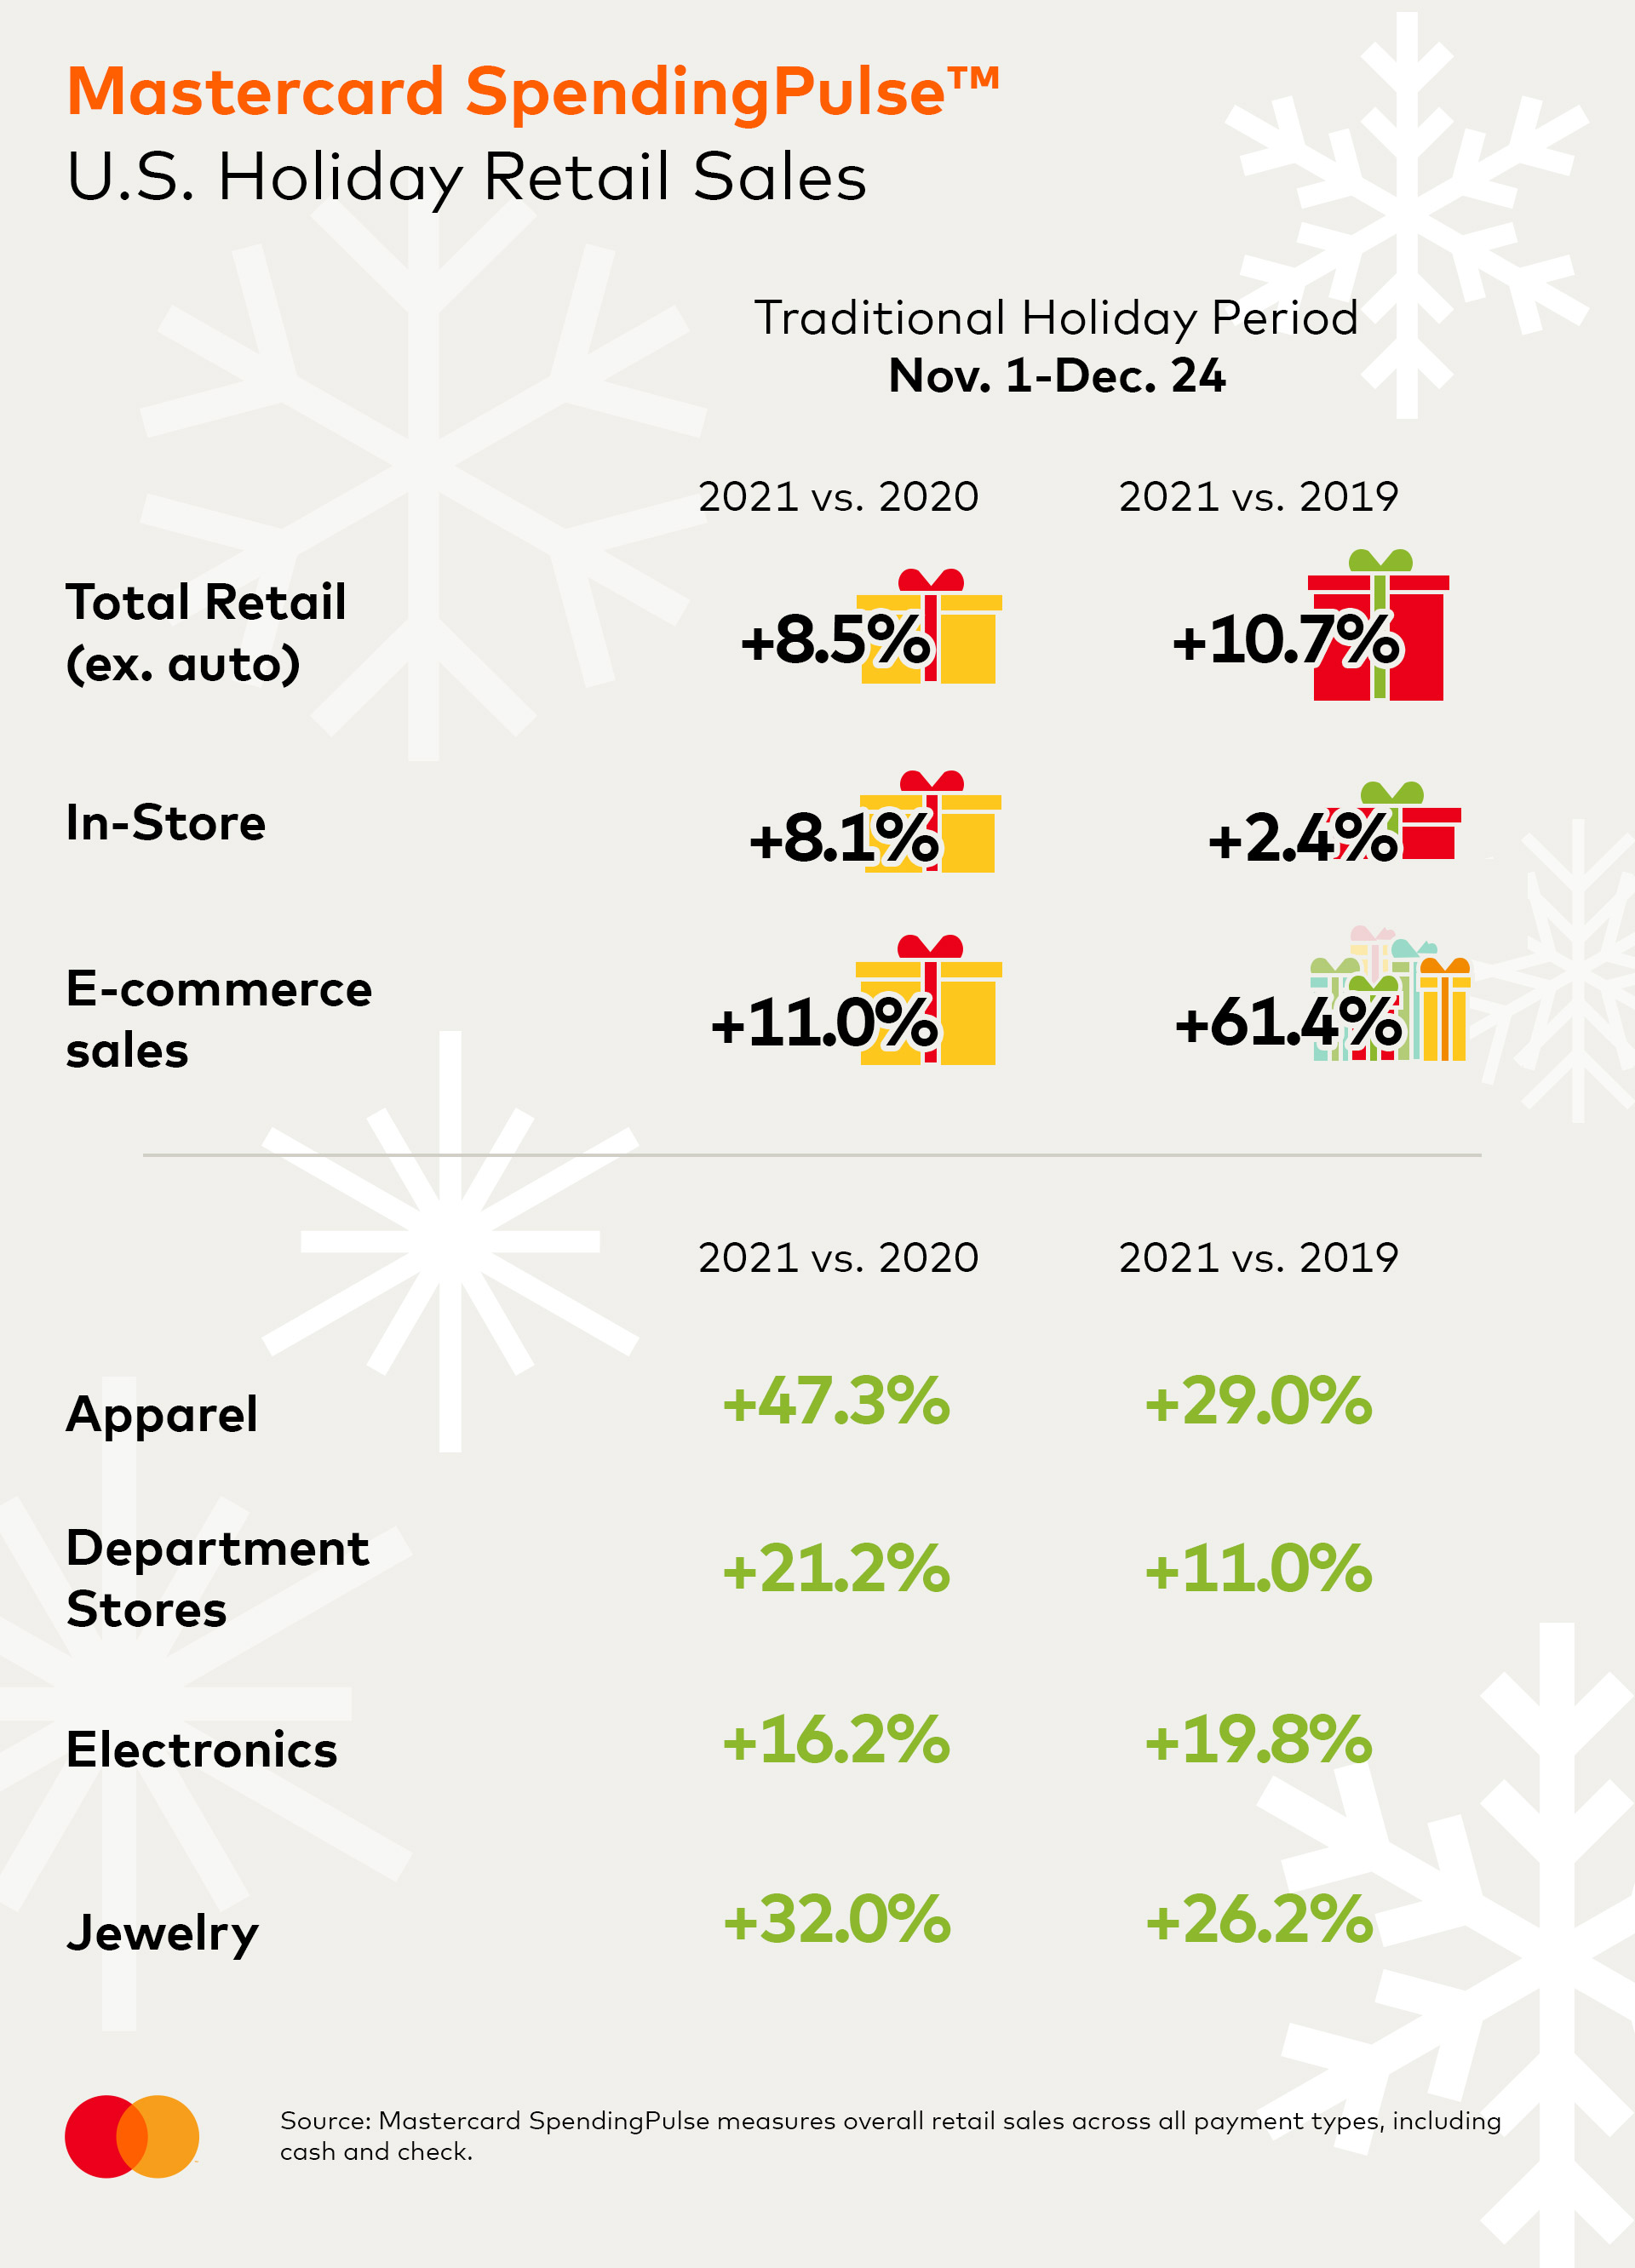 Estados Unidos registró un alza en ventas navideñas 1